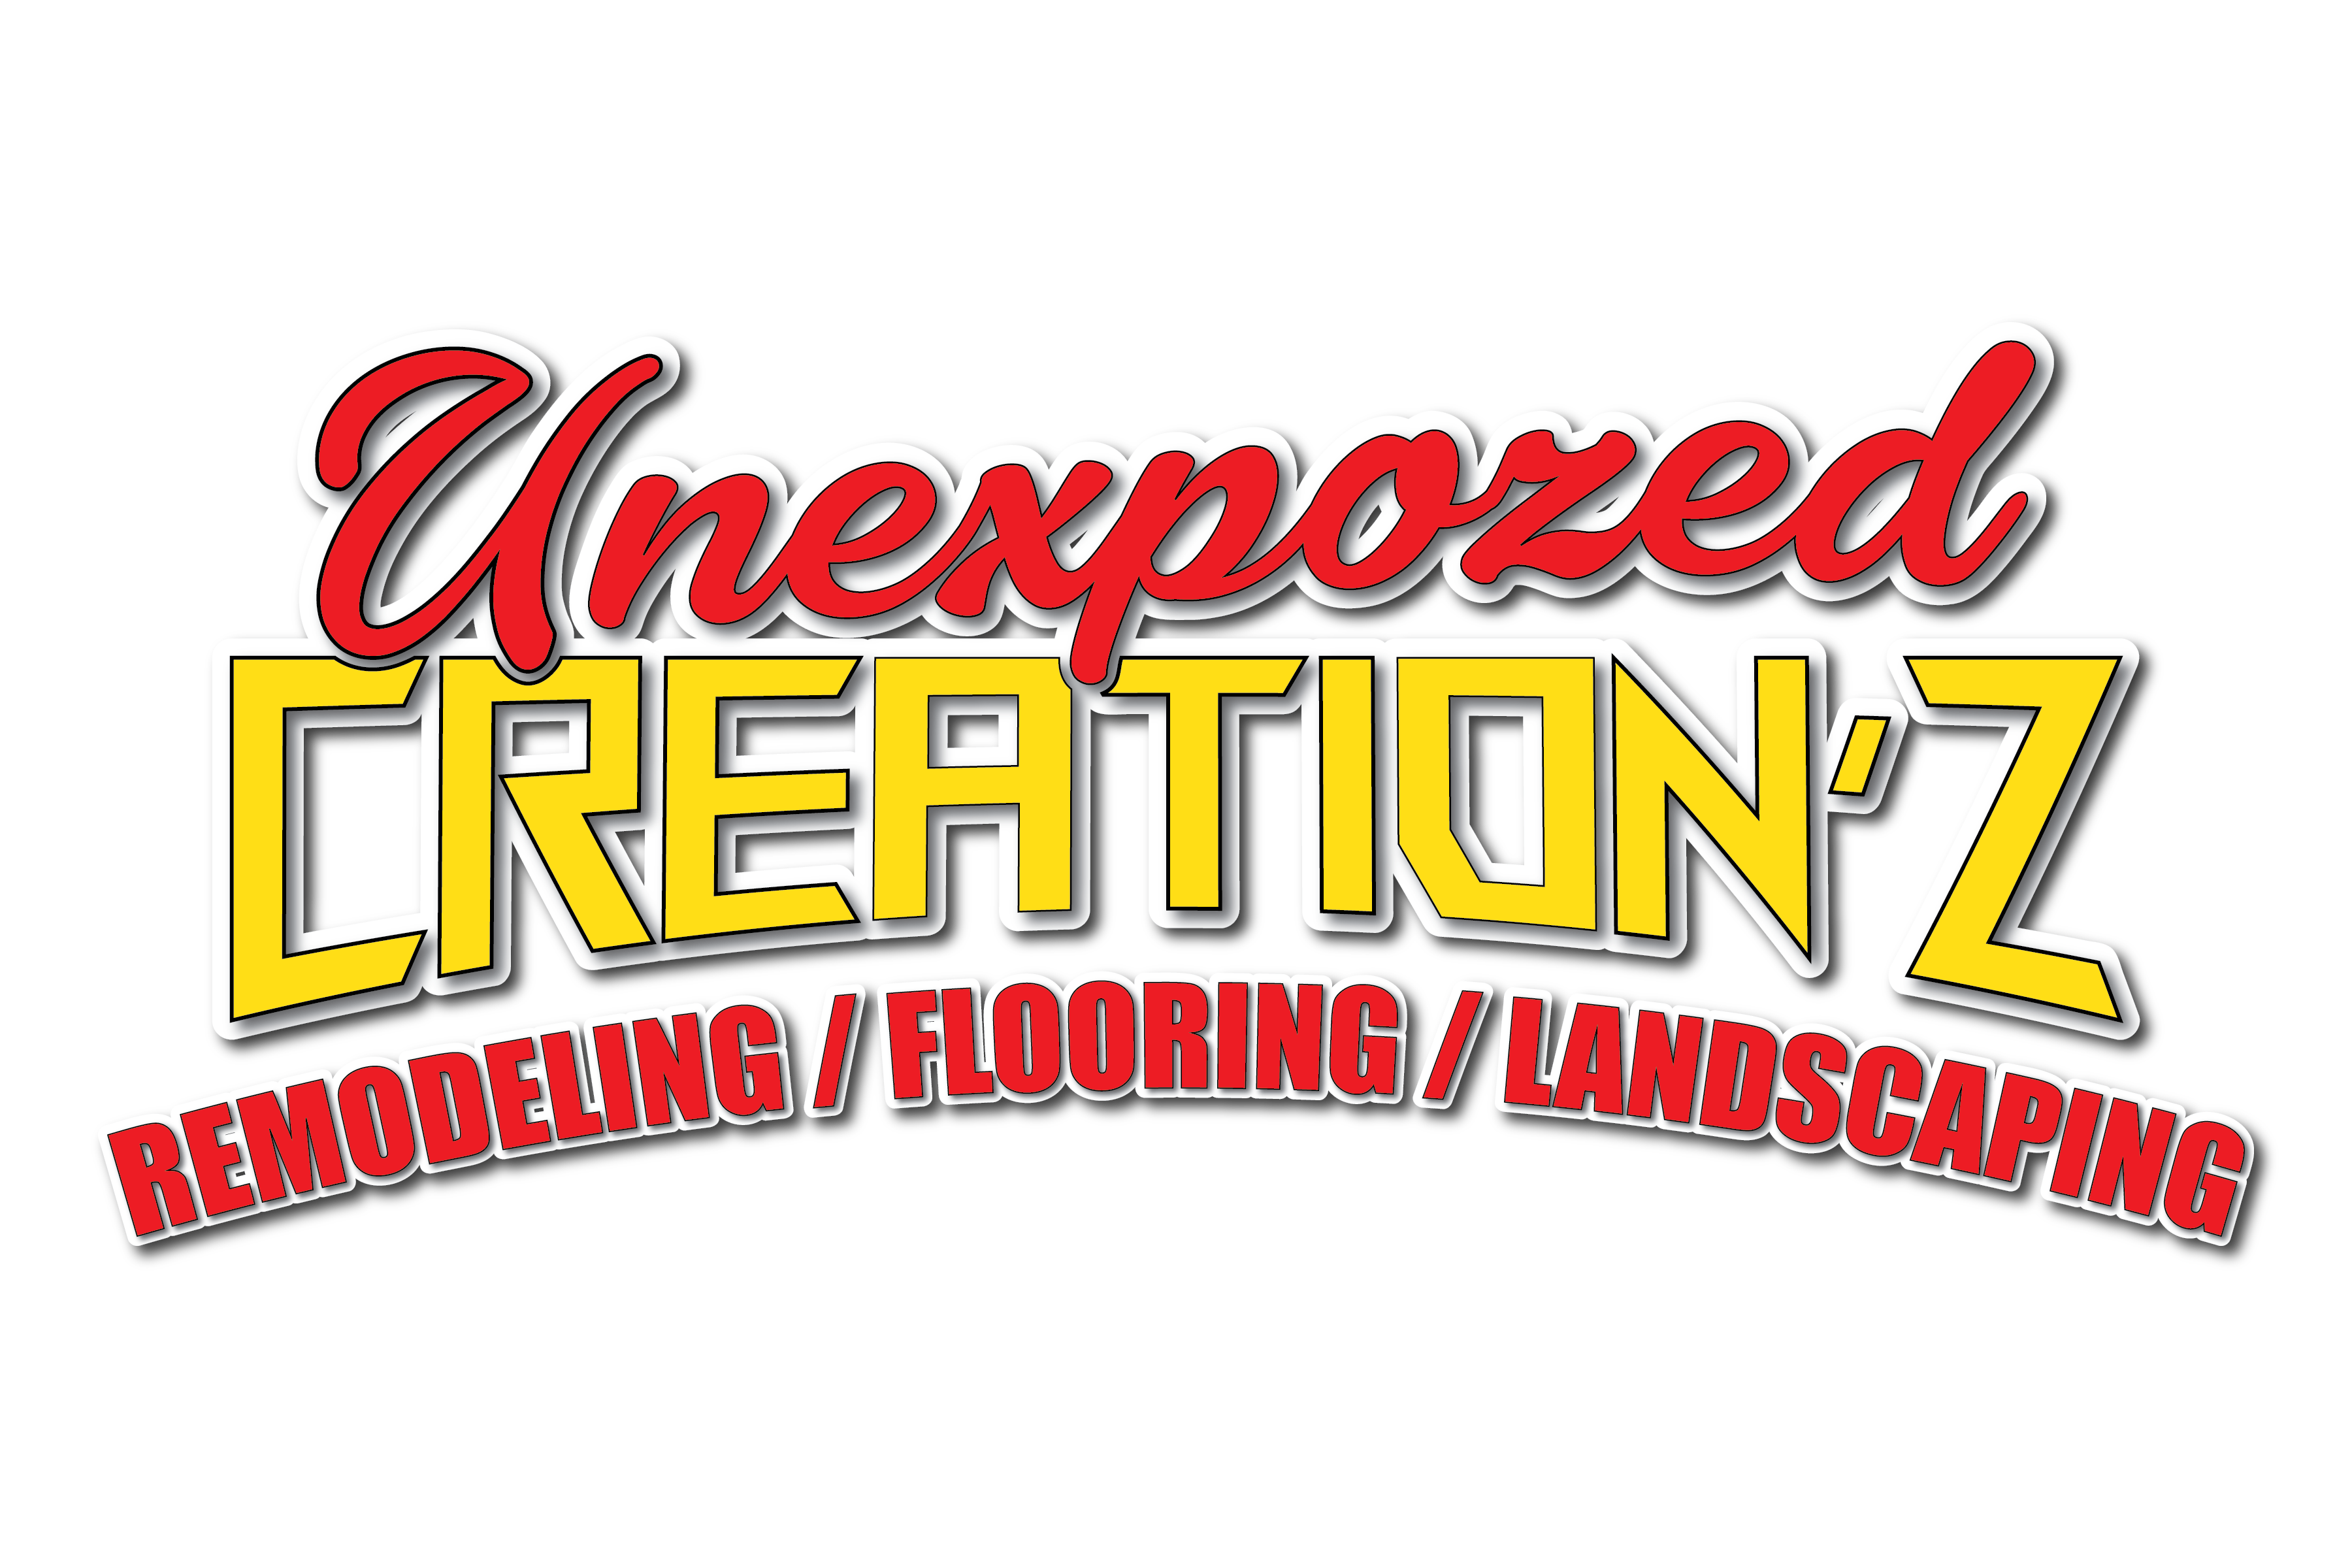 Unexpozed Creation'z Logo